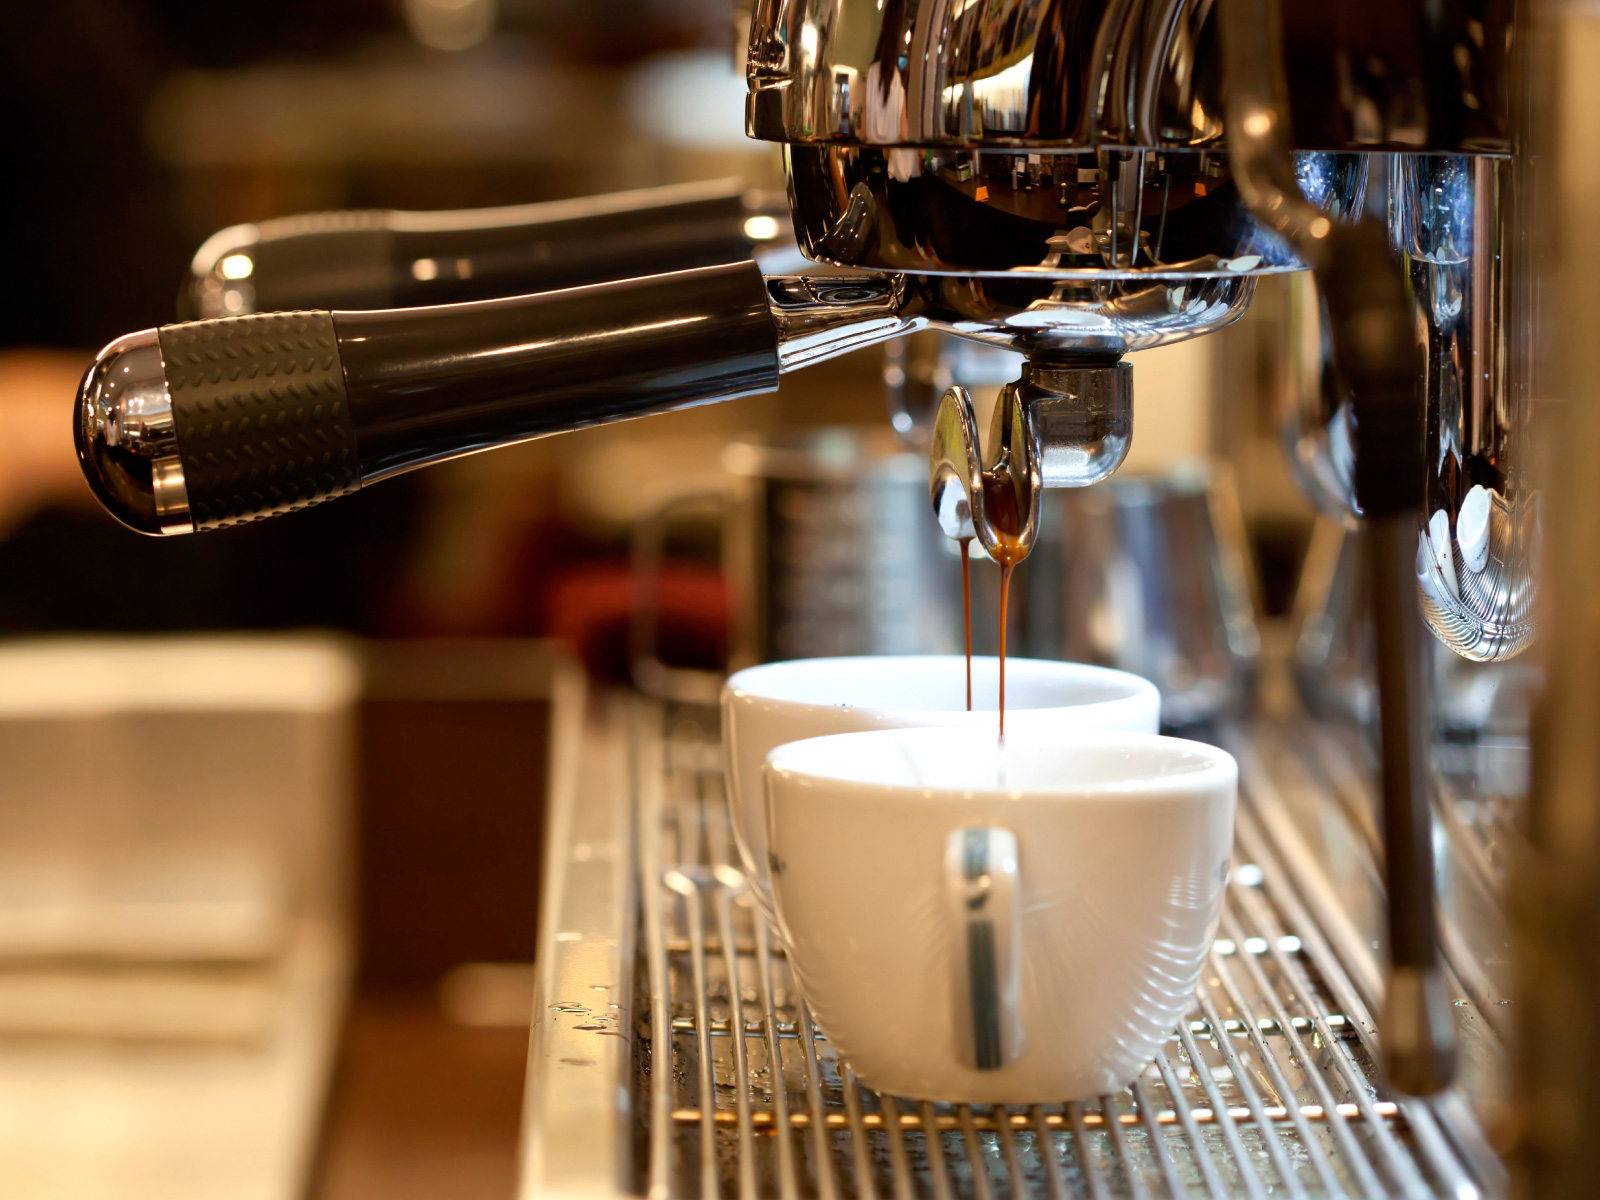 Специалисты рассказали, что может сделать кофемашину бесполезным предметом интерьера